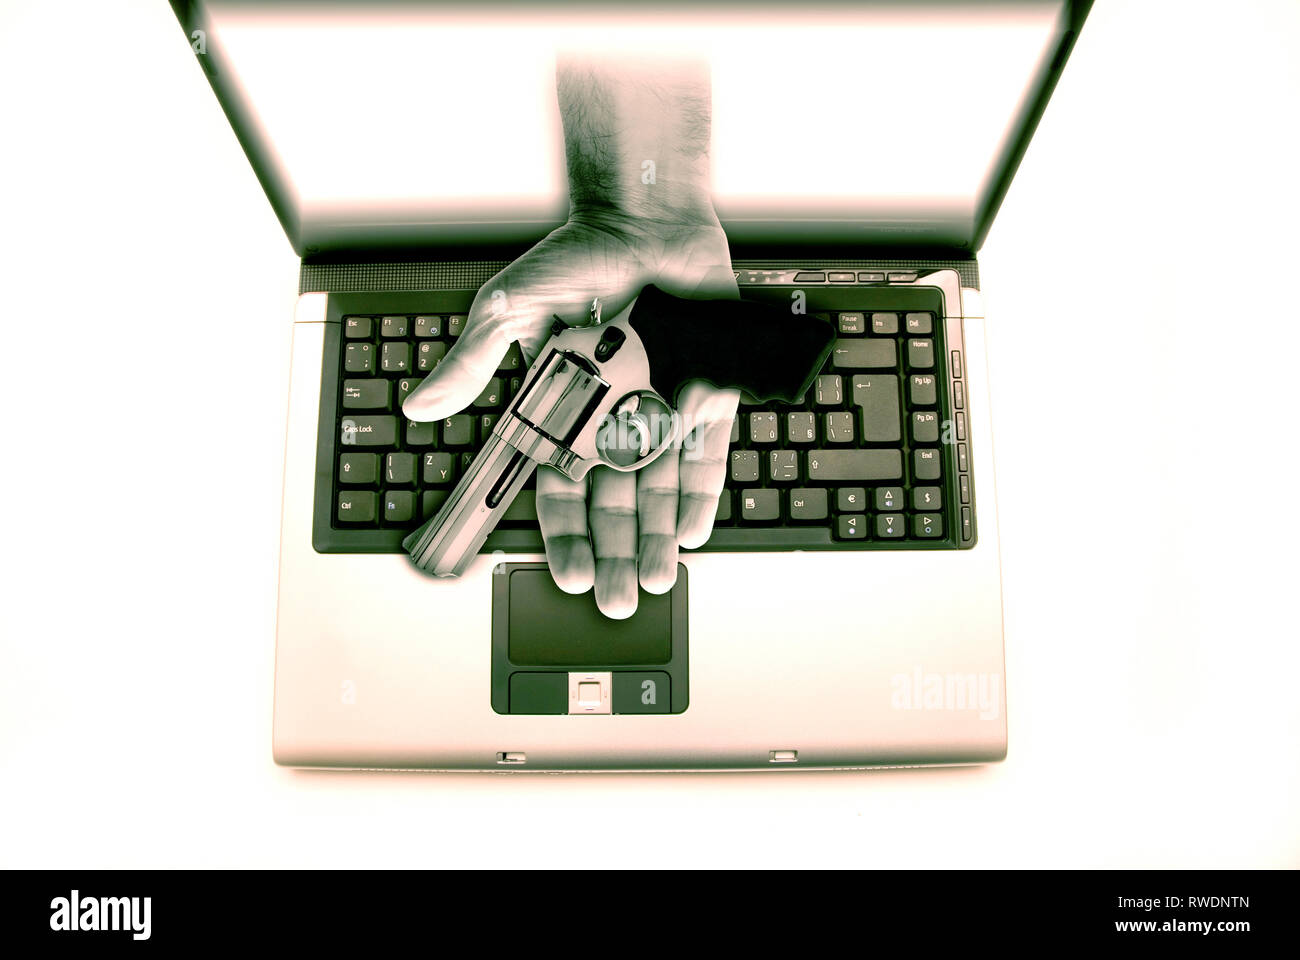 Computer portatile con una mano e aprire palm, venendo fuori dello schermo con una pistola - concept per il traffico illegale di armi nel web profondo Foto Stock